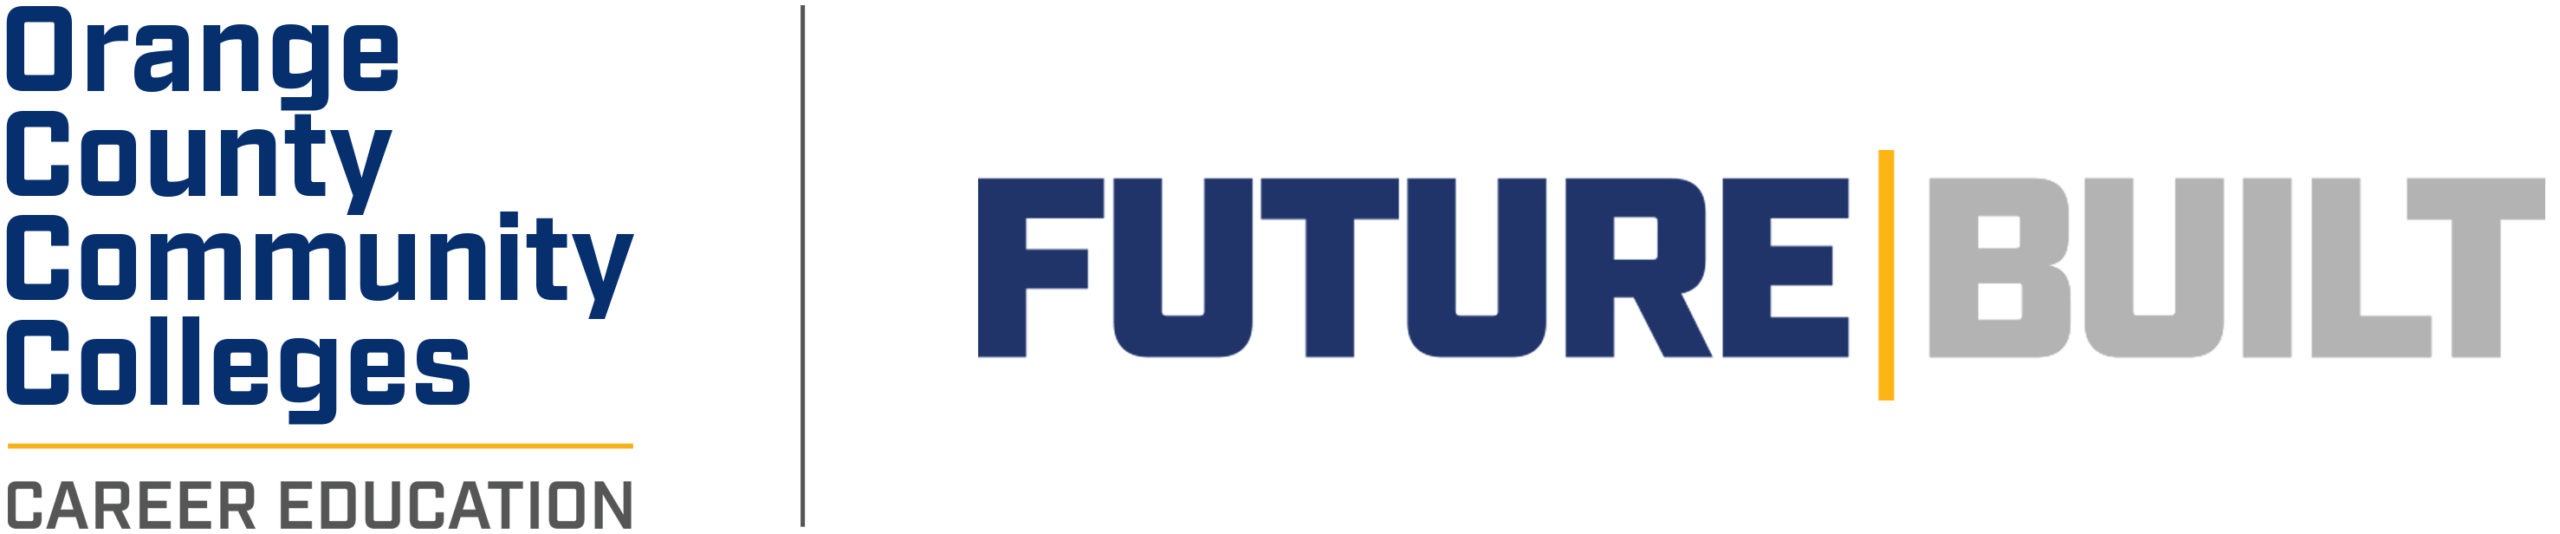 Futuro construído - logotipo de educação de carreira de Orange County